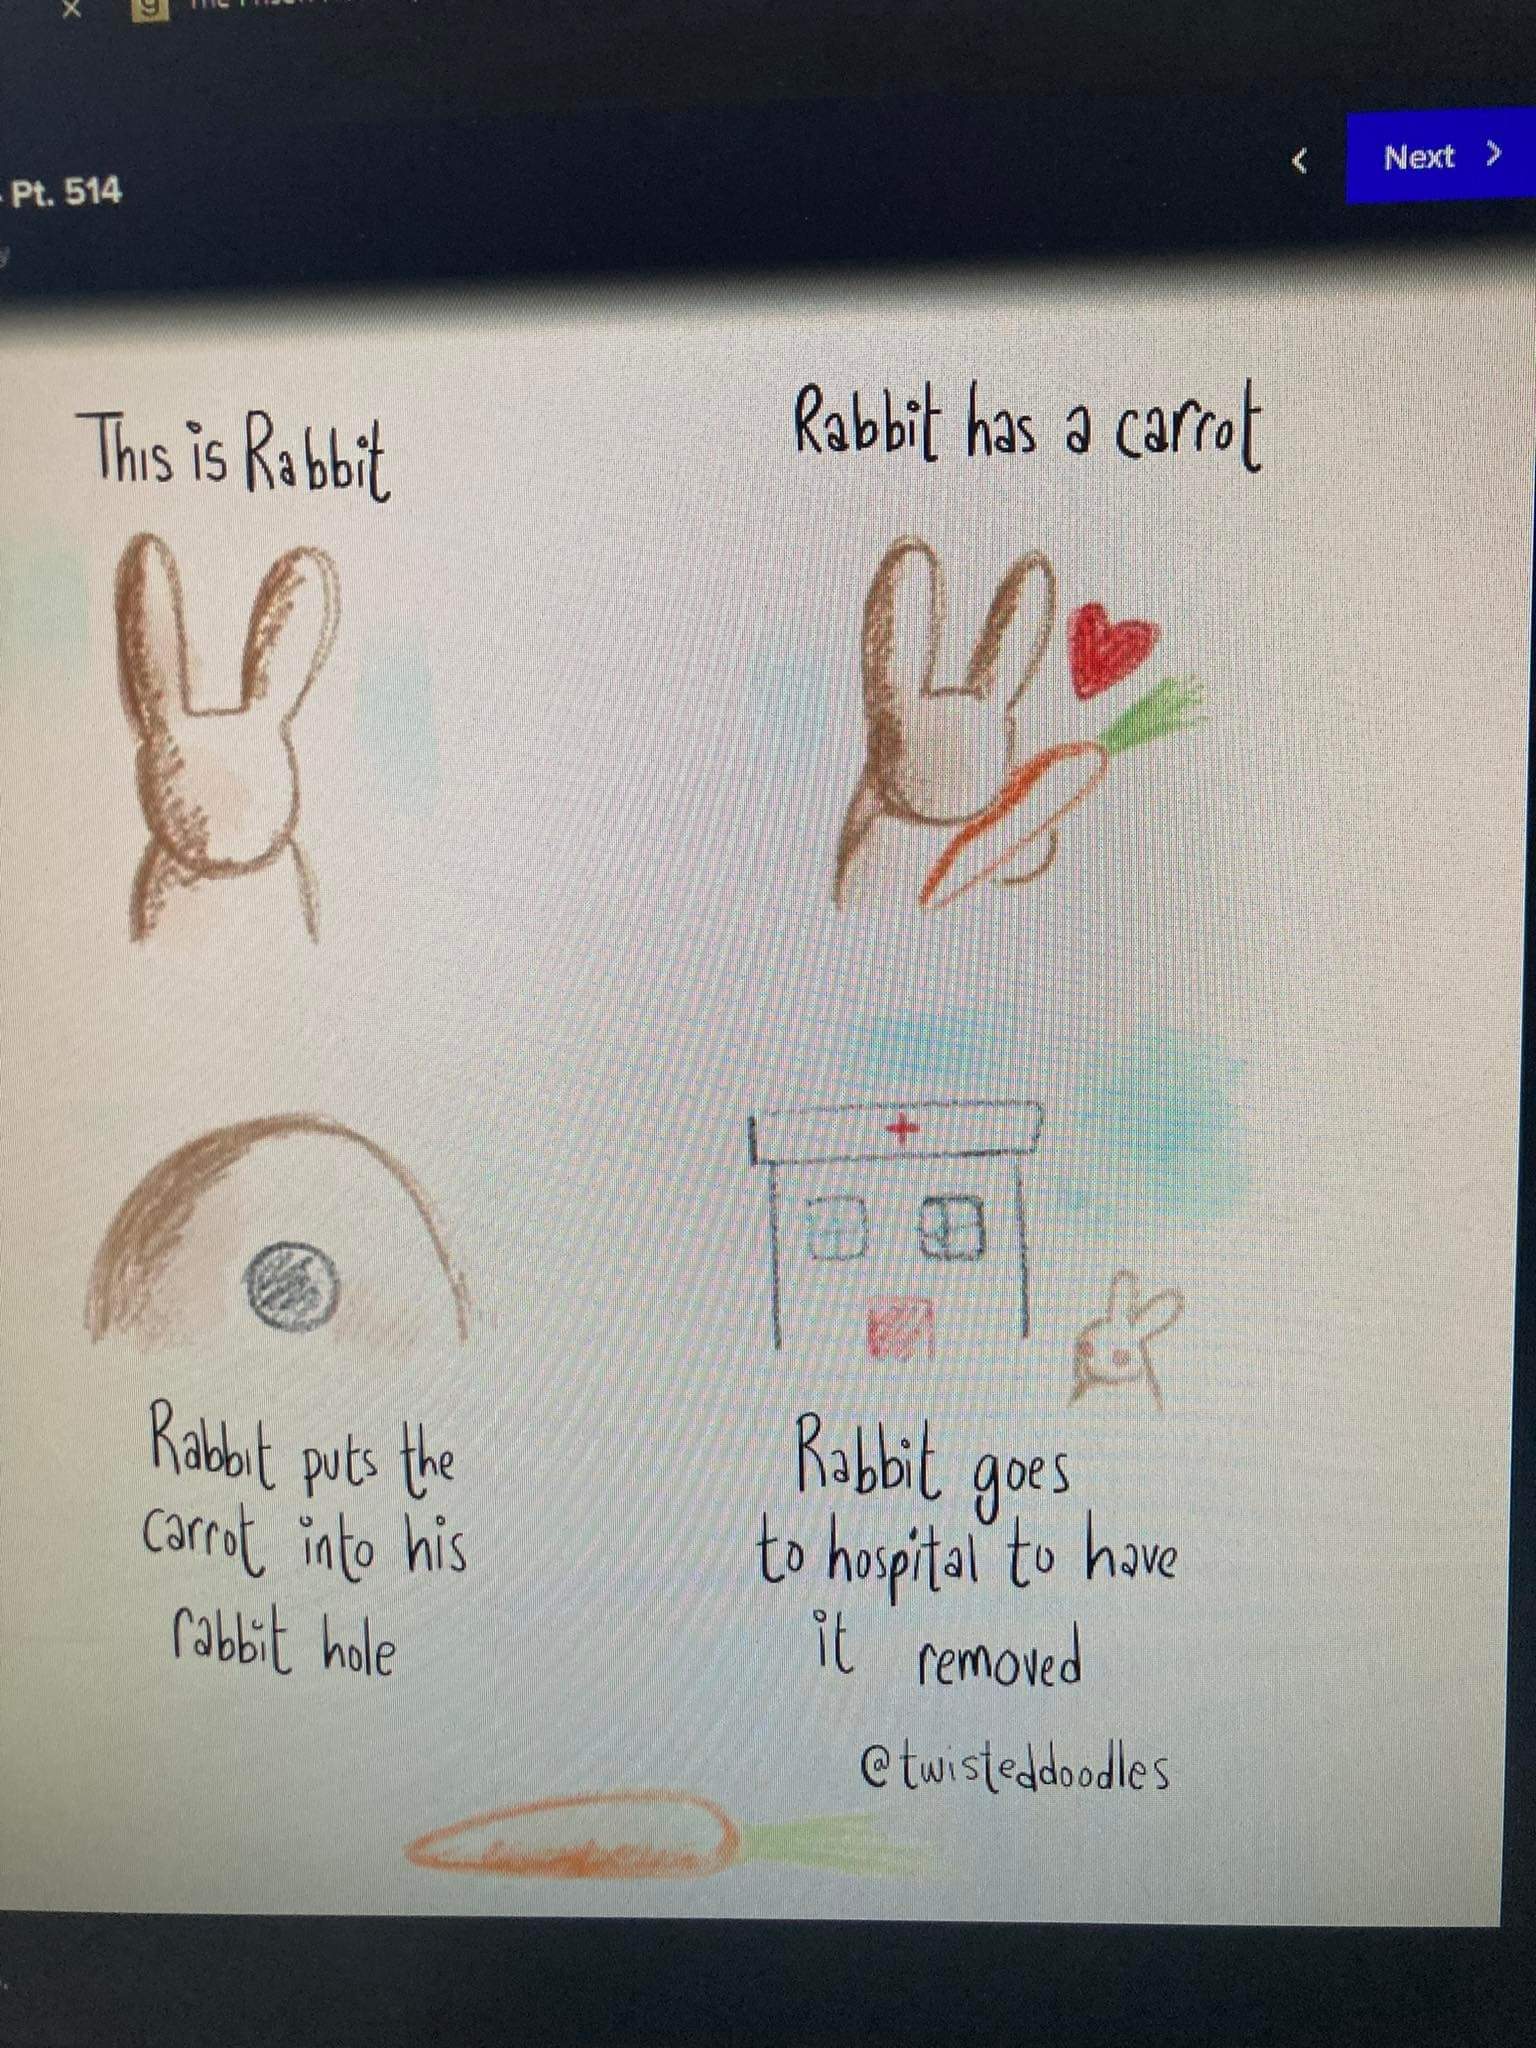 rabbit_has_a_carrot.jpg